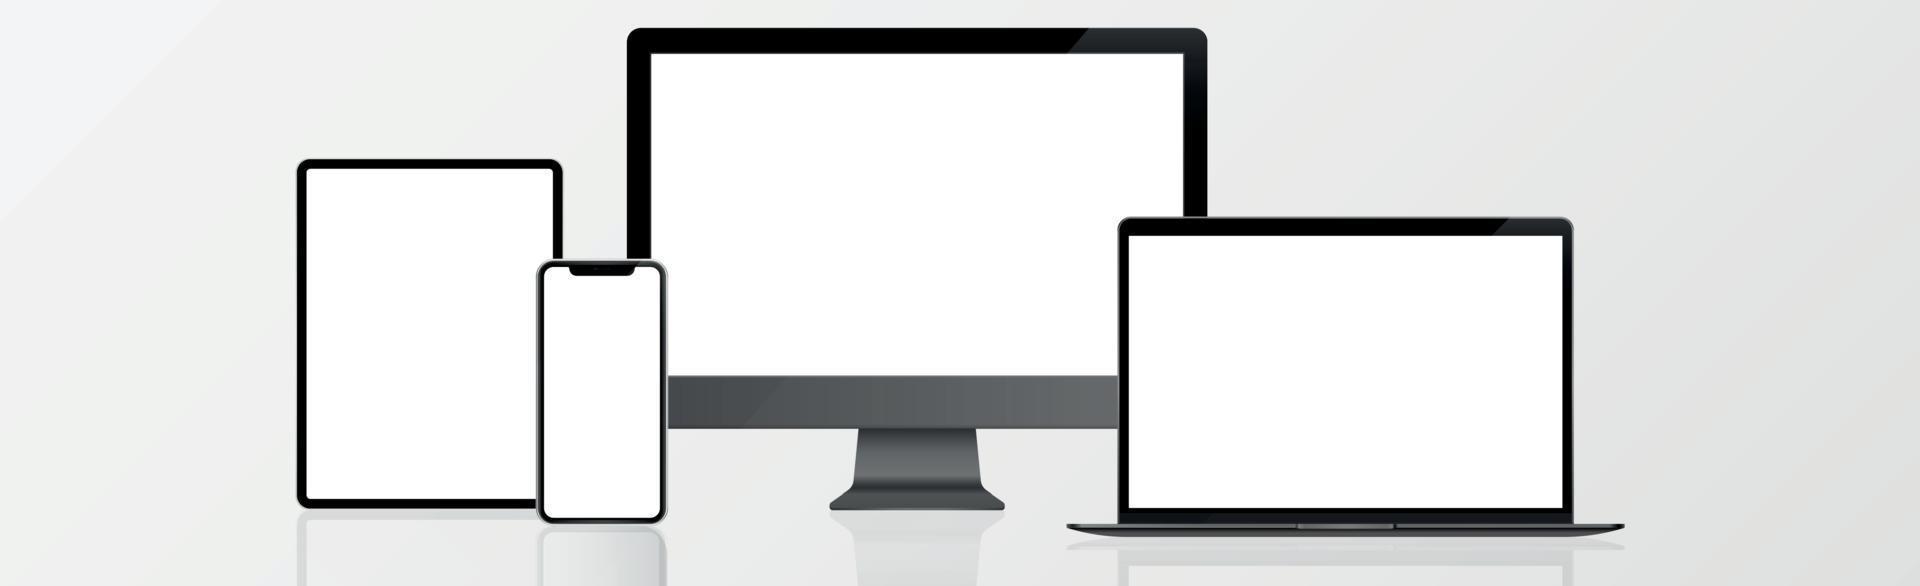 pc-skärm, bärbar dator, surfplatta, smartphone i svart, silver och vitt med reflektion - realistisk vektor